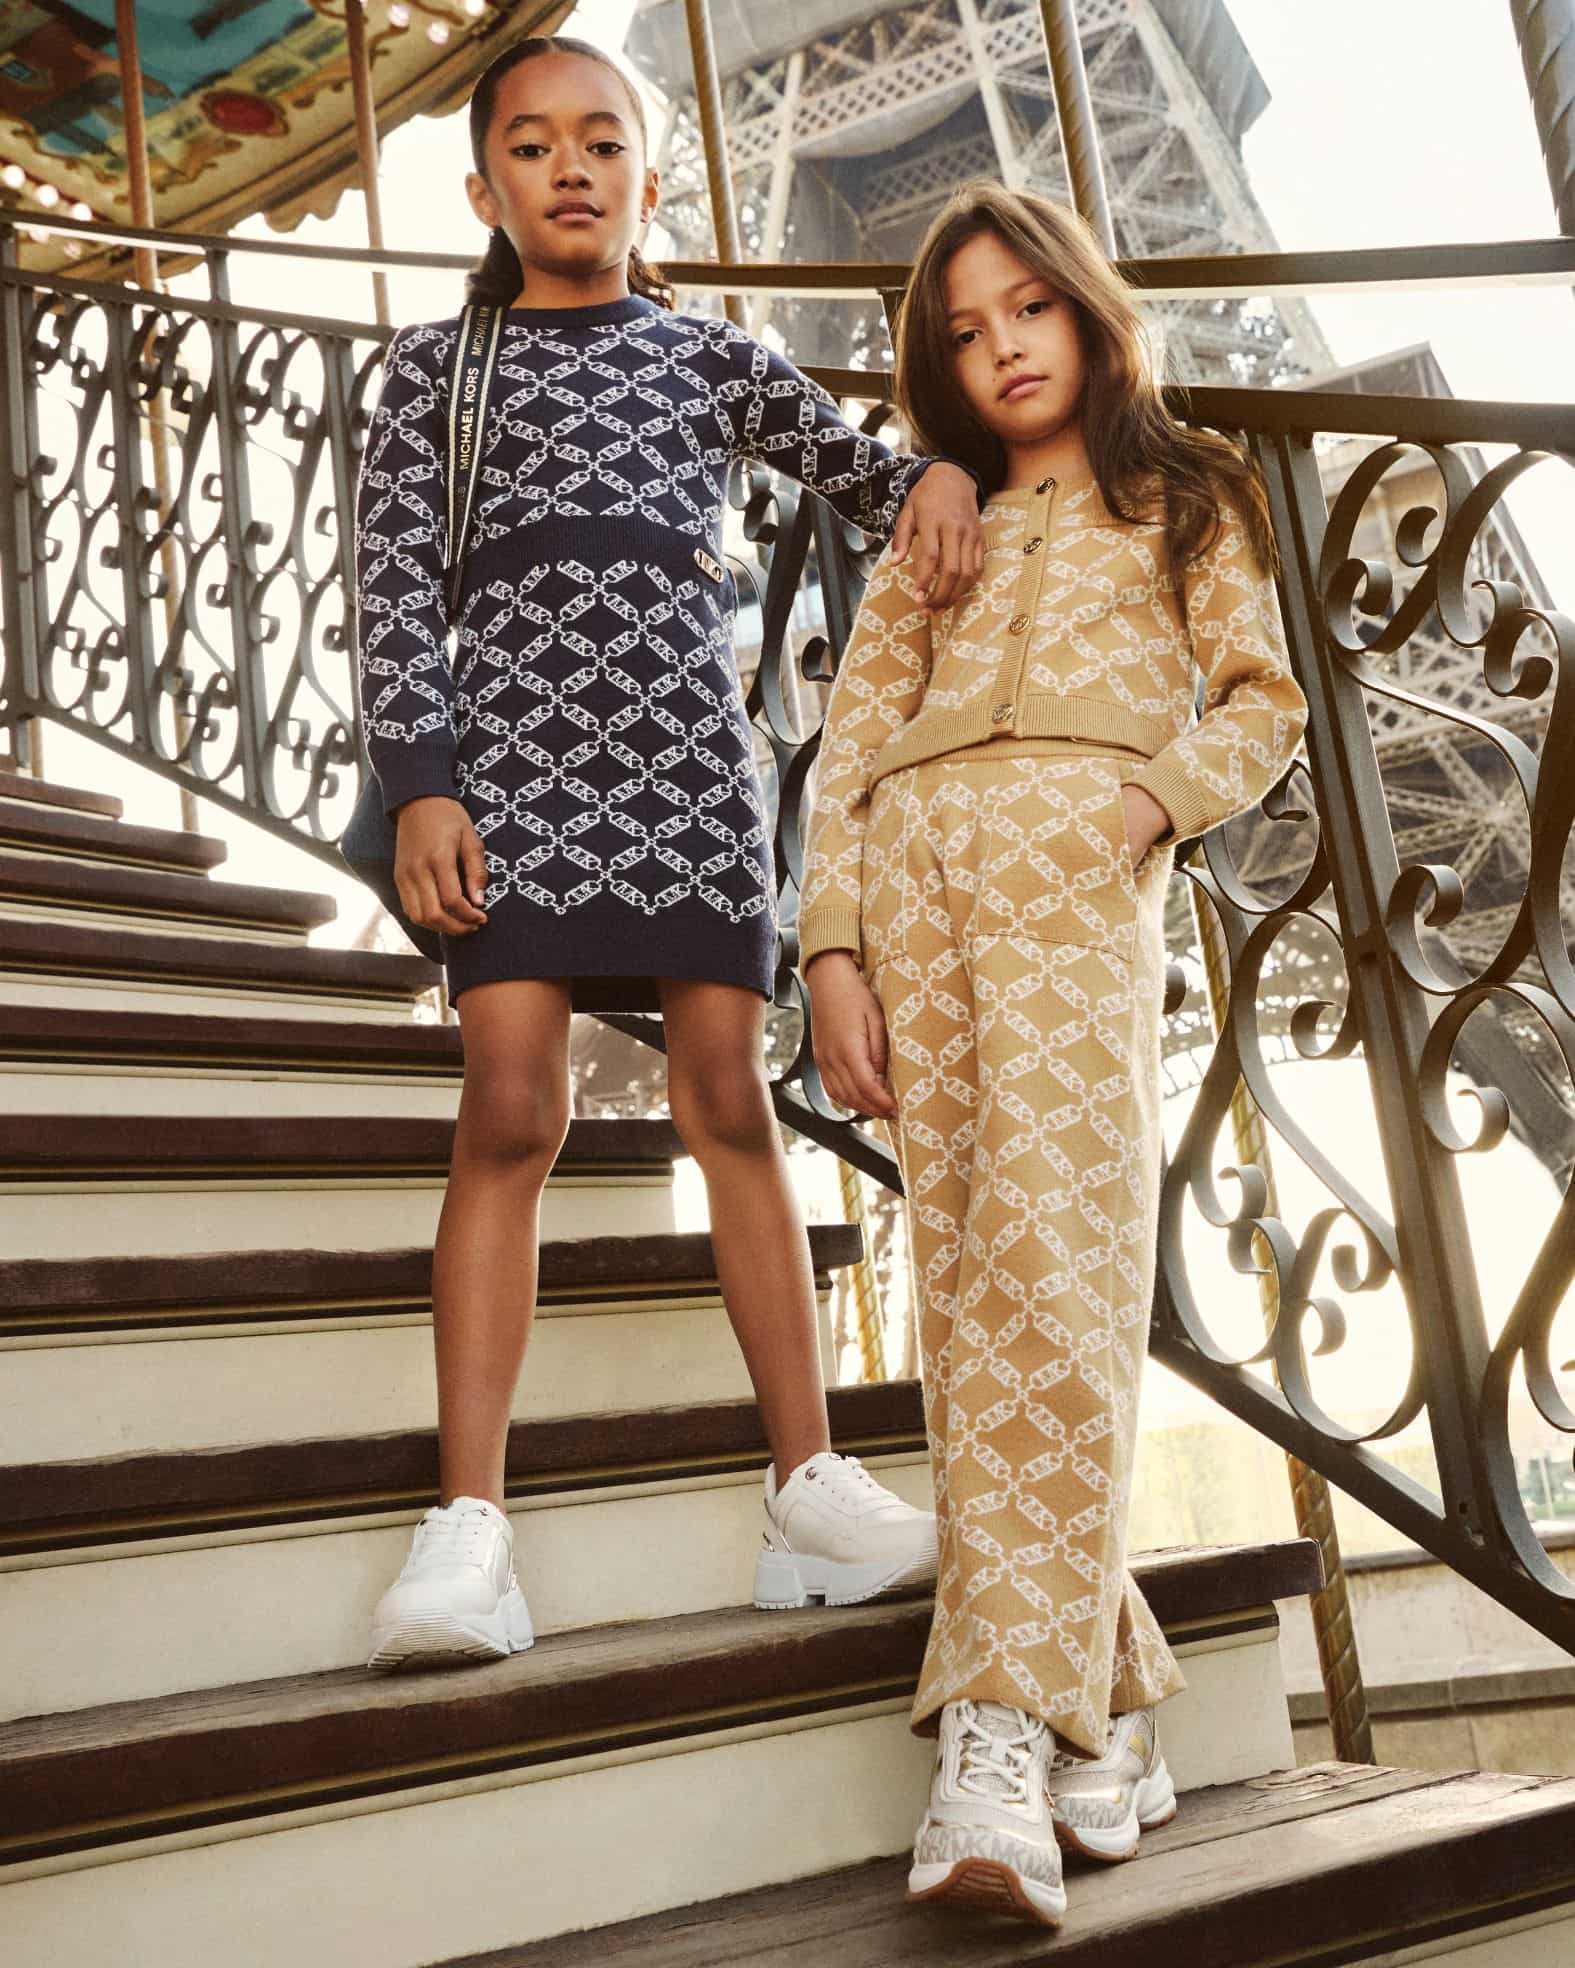 Michael Kors Kids Designer Clothes For Girls  Michael Kors